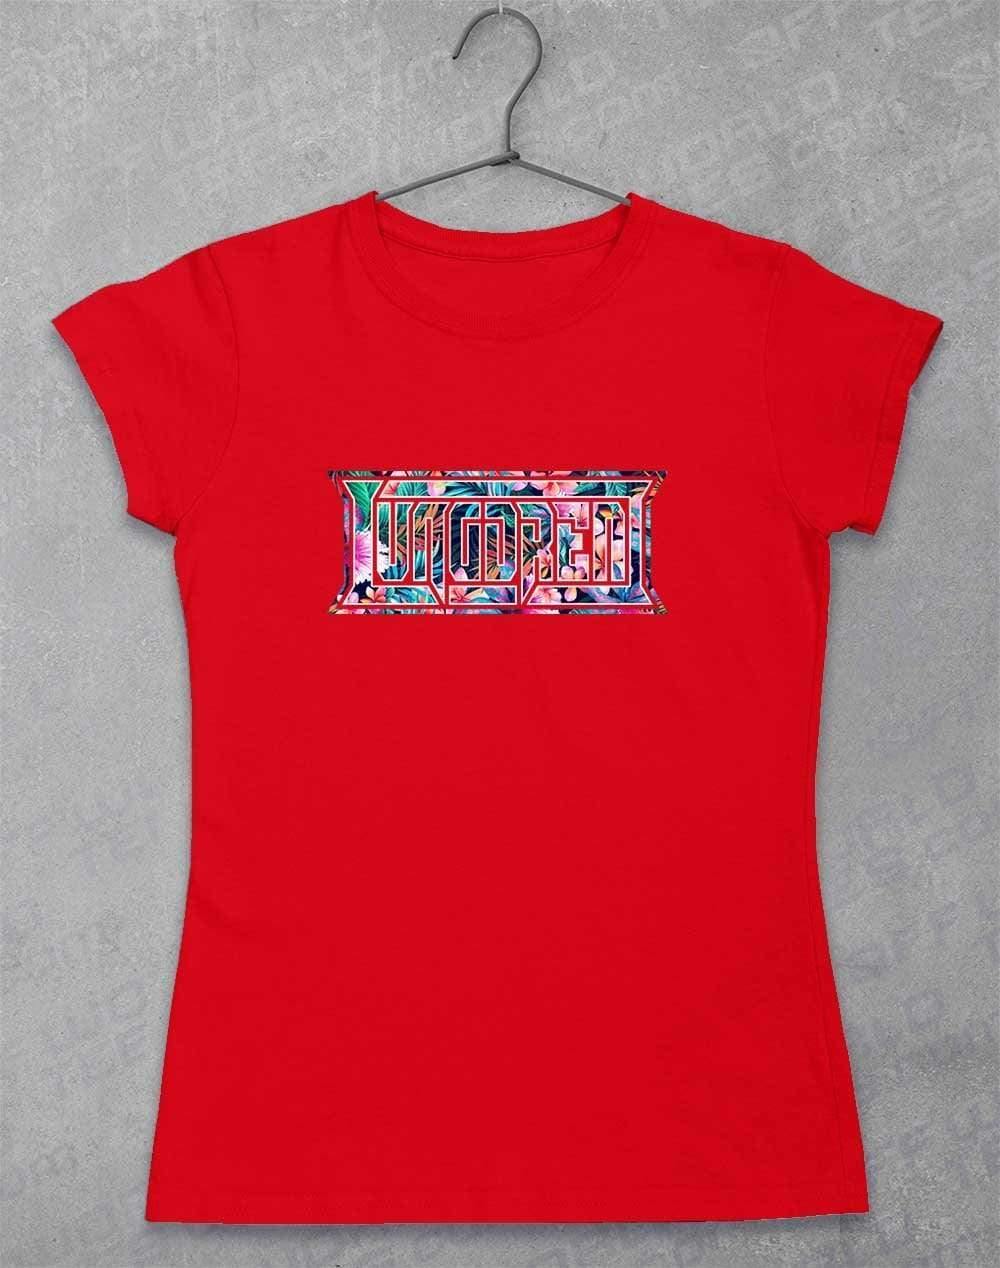 LUNGDREN Hawaiian Logo - Womens T-Shirt 8-10 / Red  - Off World Tees